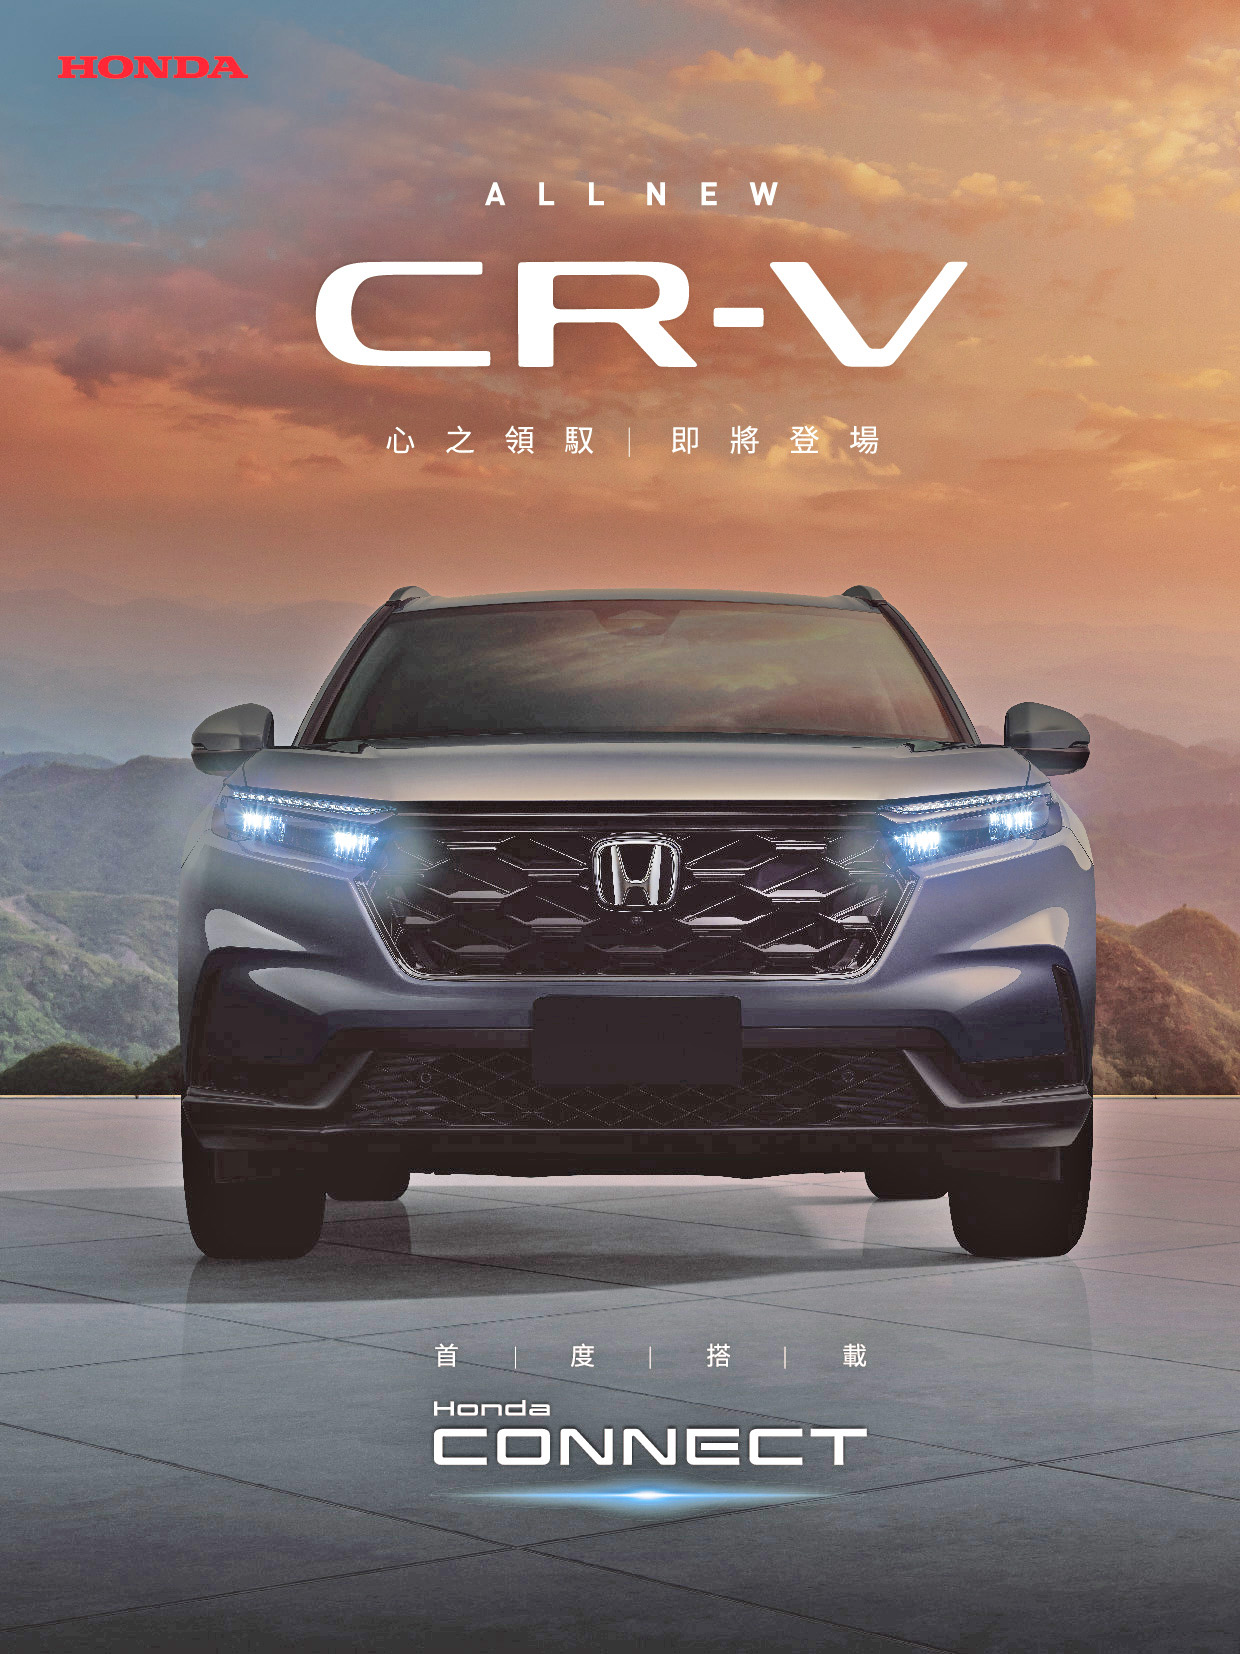 All-New CR-V TEASER.jpg